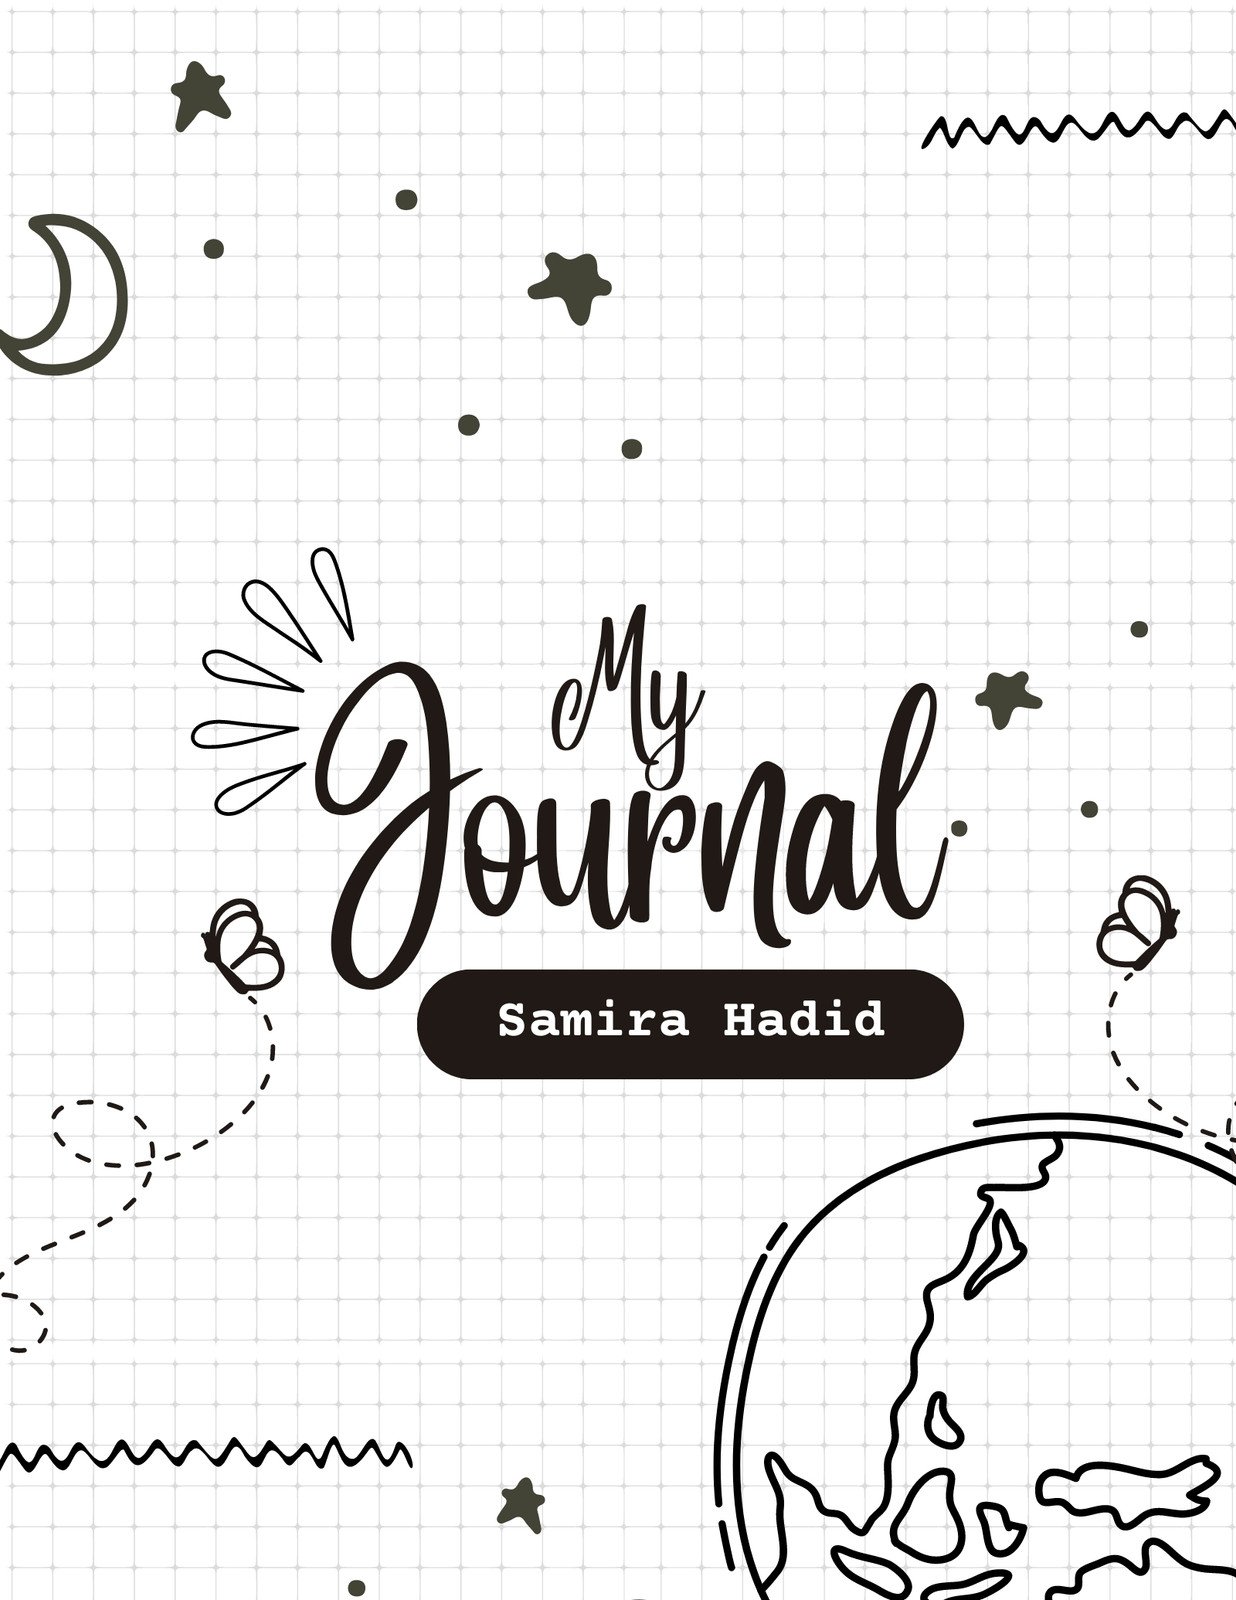 Free editable and printable journal templates